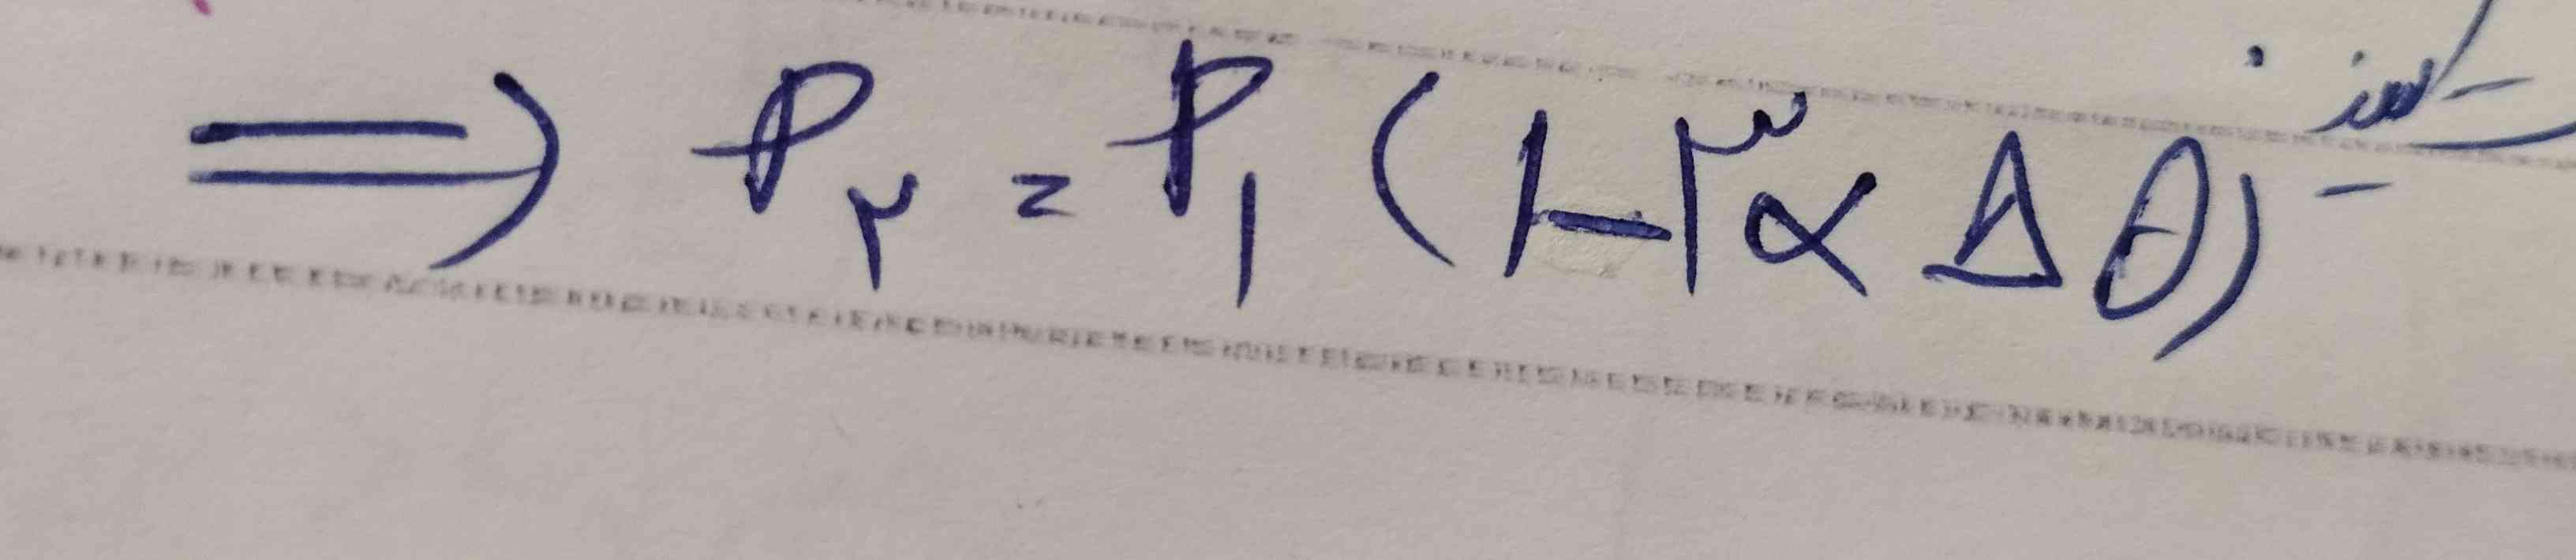 سلام بچه ها 
اثبات این فرمول رو دارید!
یا اگه بلدید اثبات کنید
معرکه میزنم!